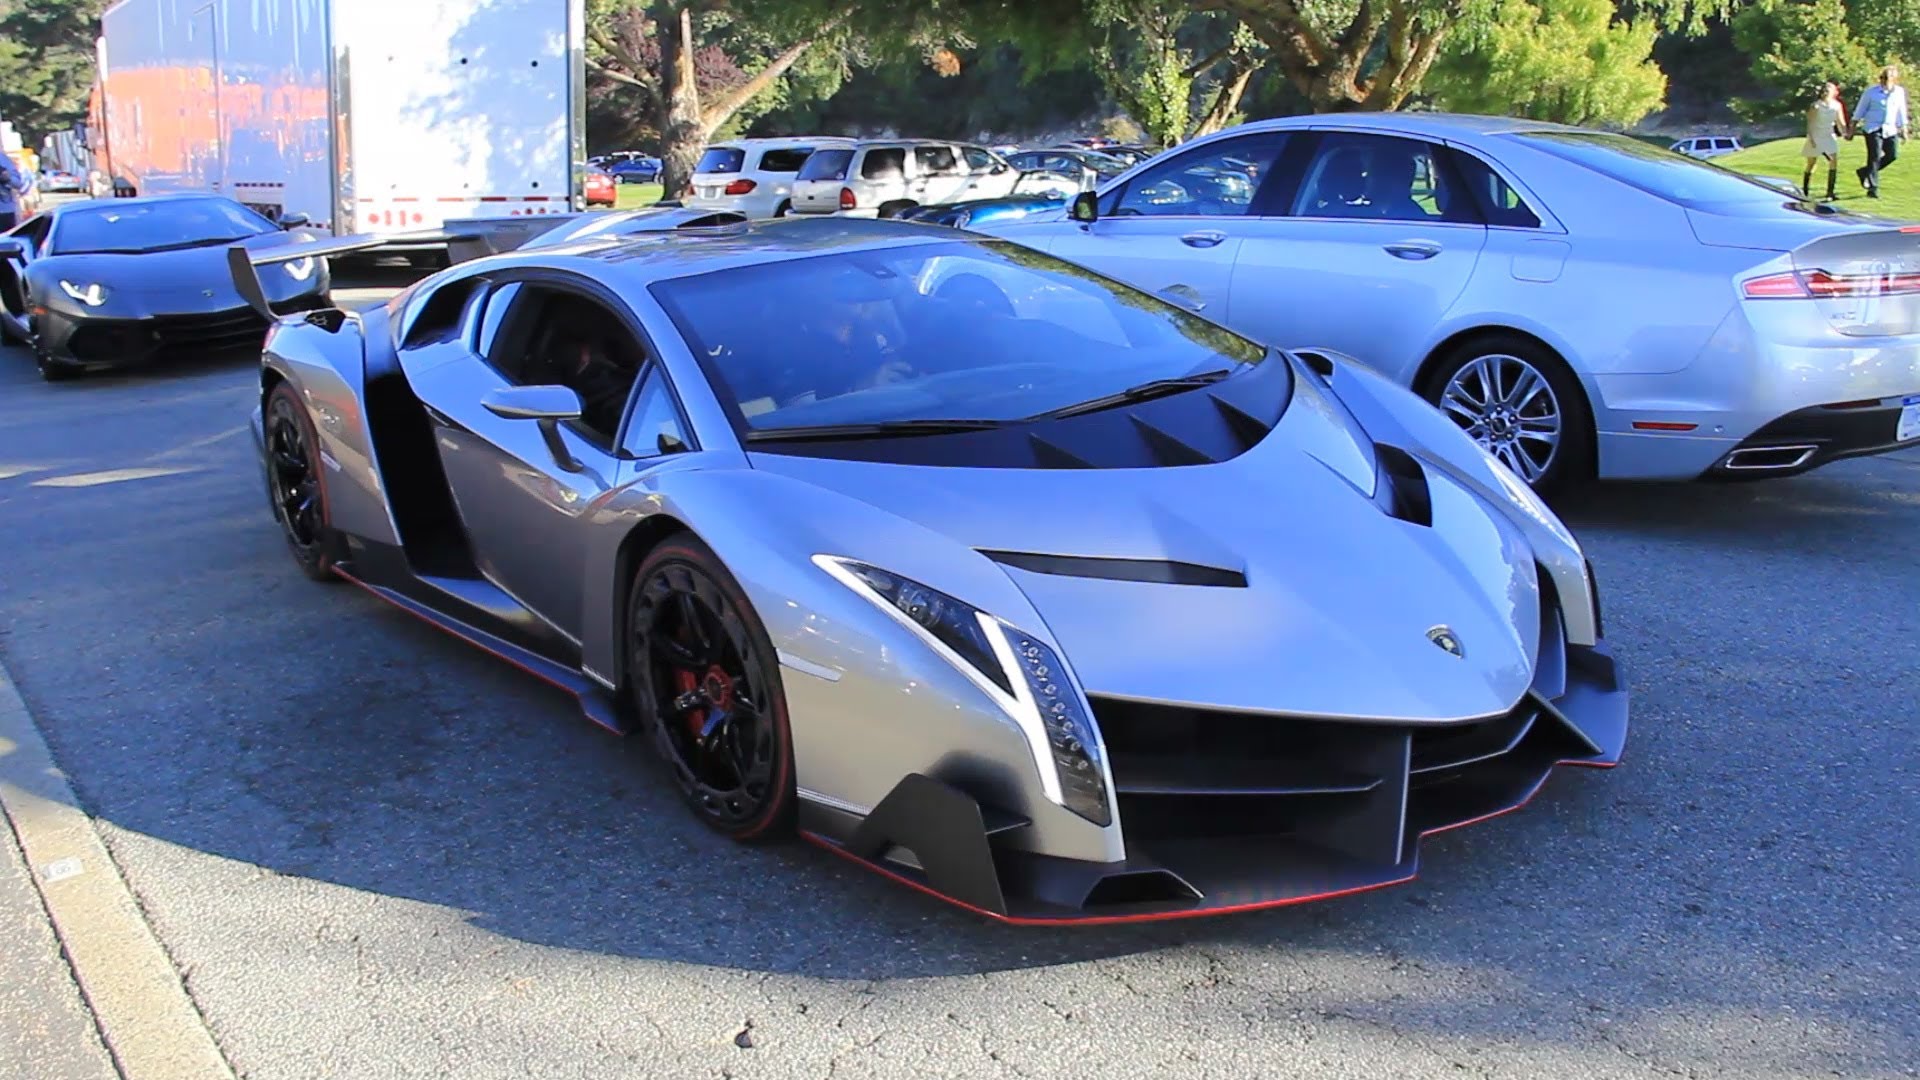 The $4.5 Million Lamborghini Veneno driving in California